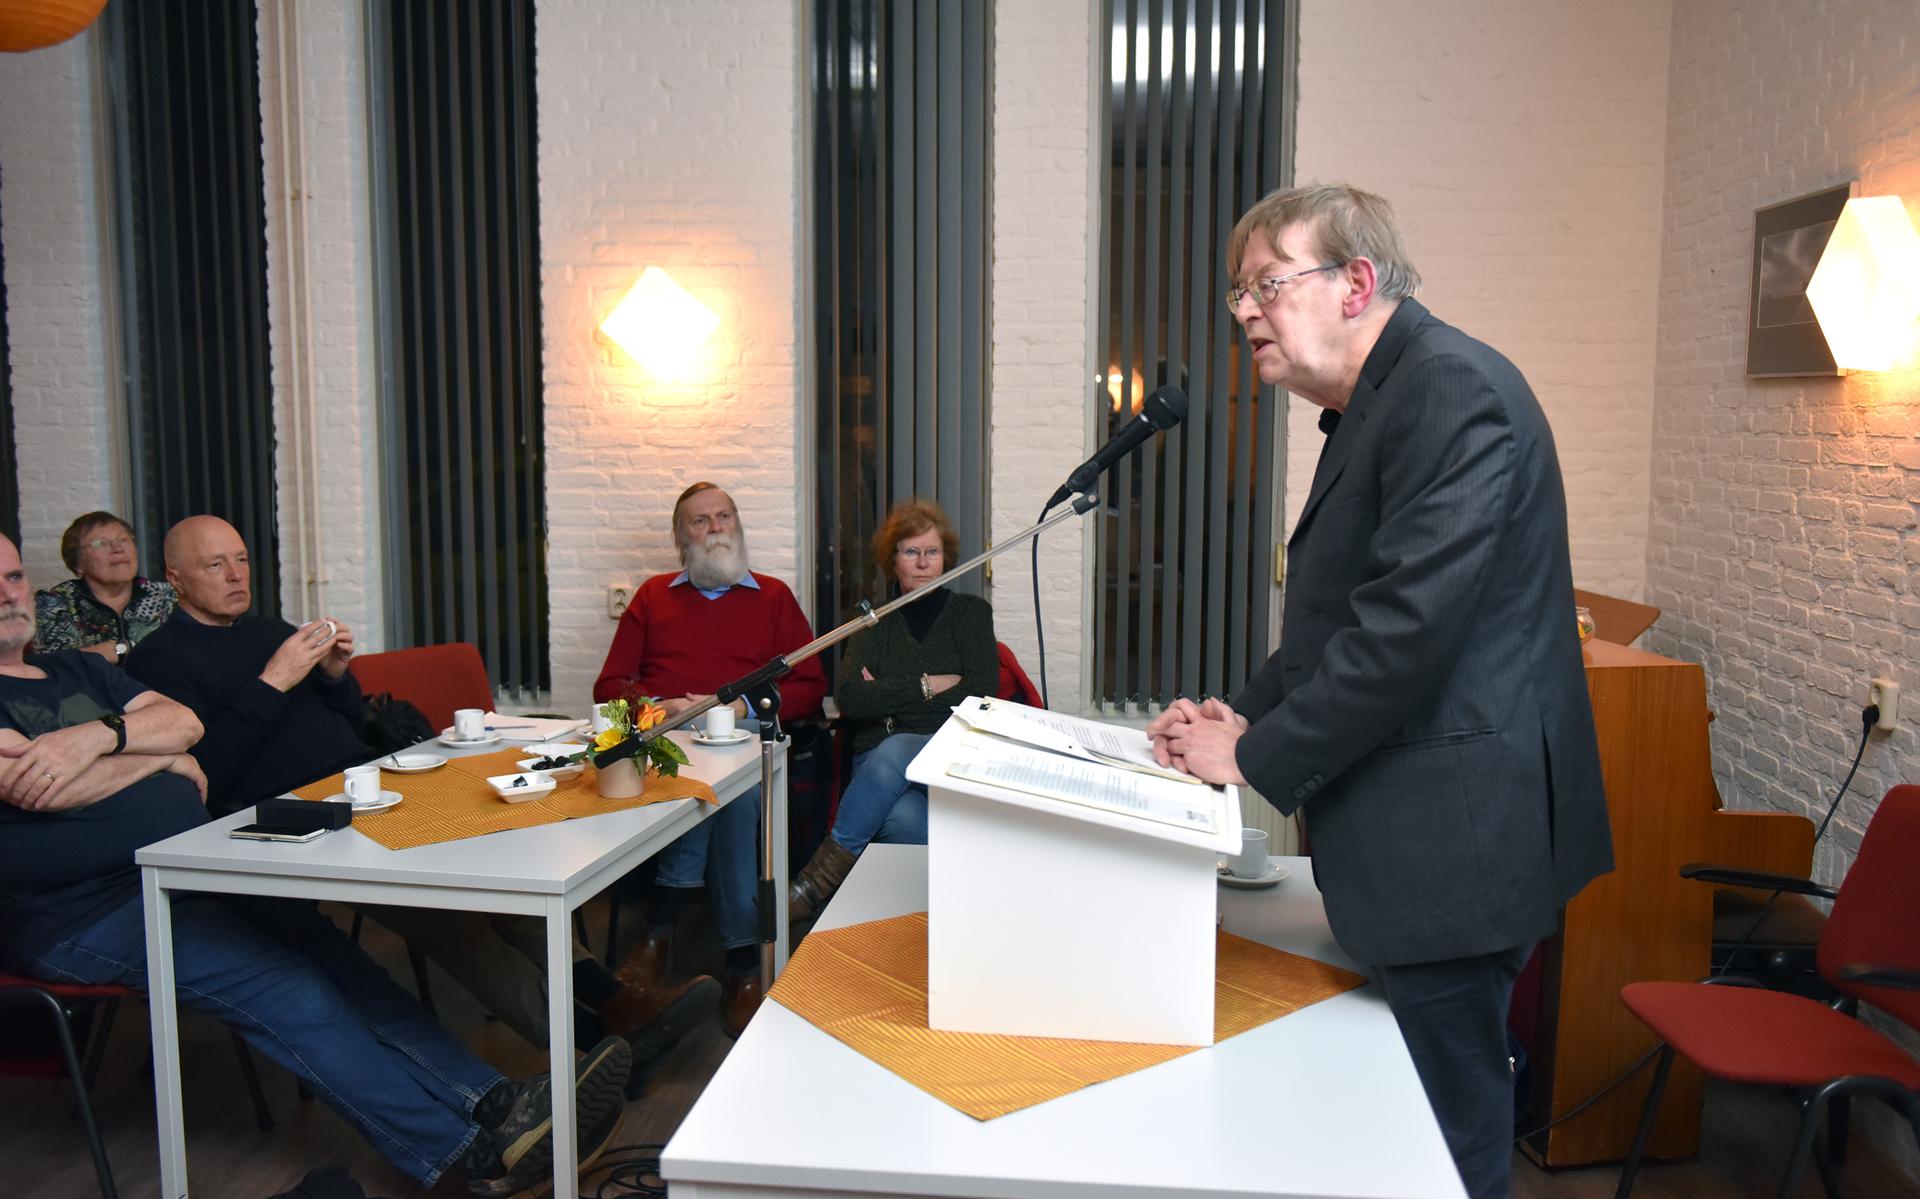 De lezing werd verzorgd door Wil Schakman uit Groningen.